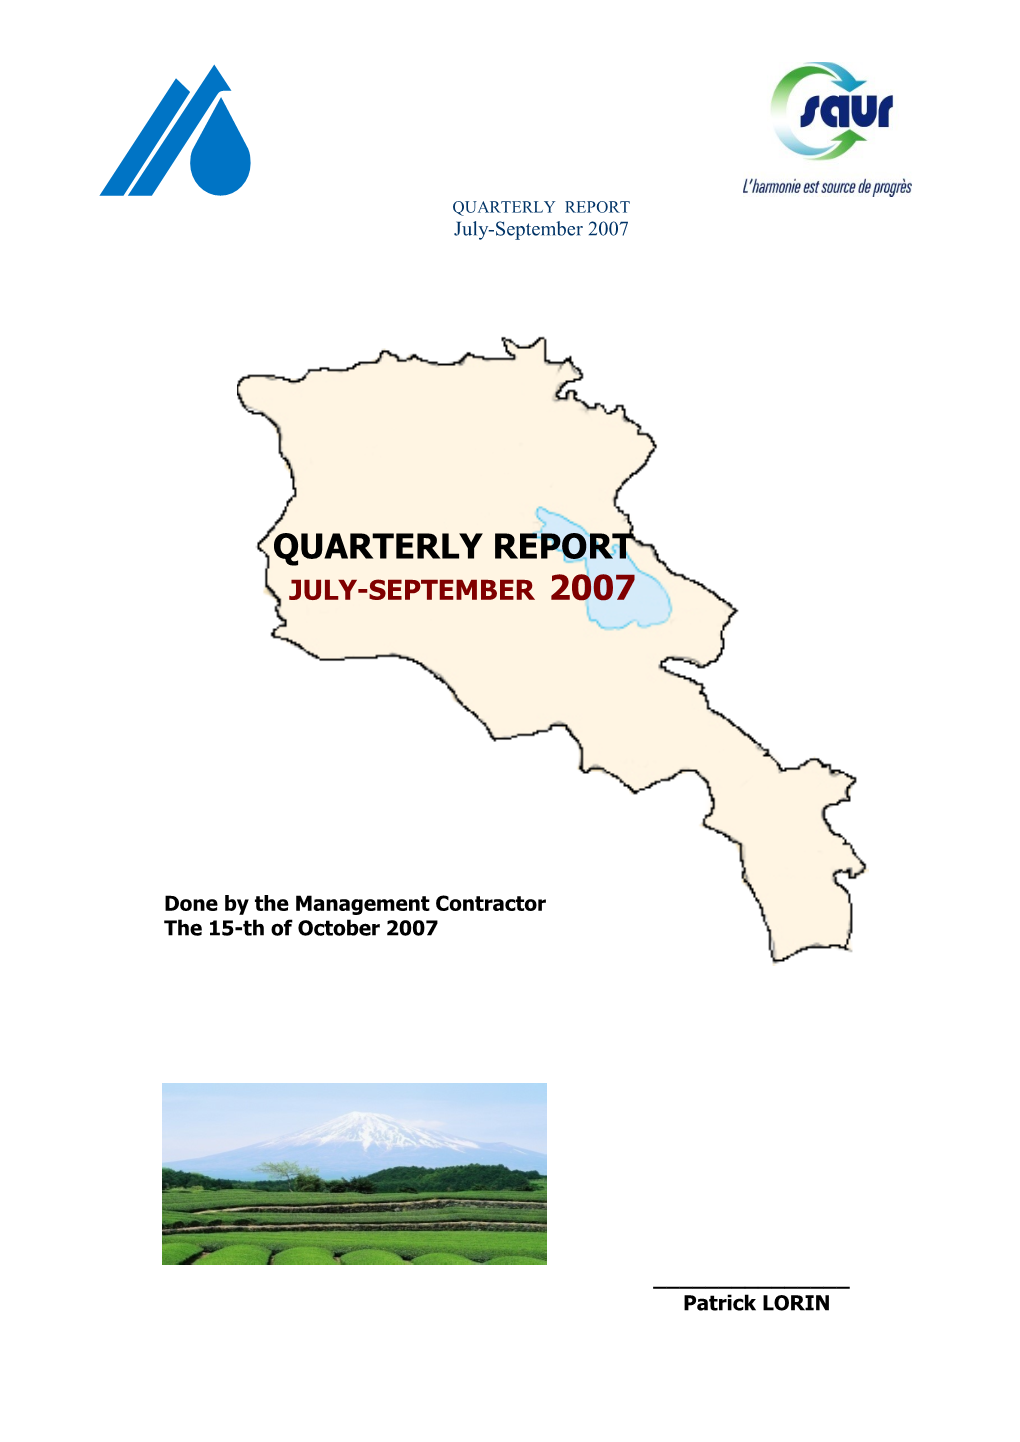 QUARTERLY REPORT July-September 2007